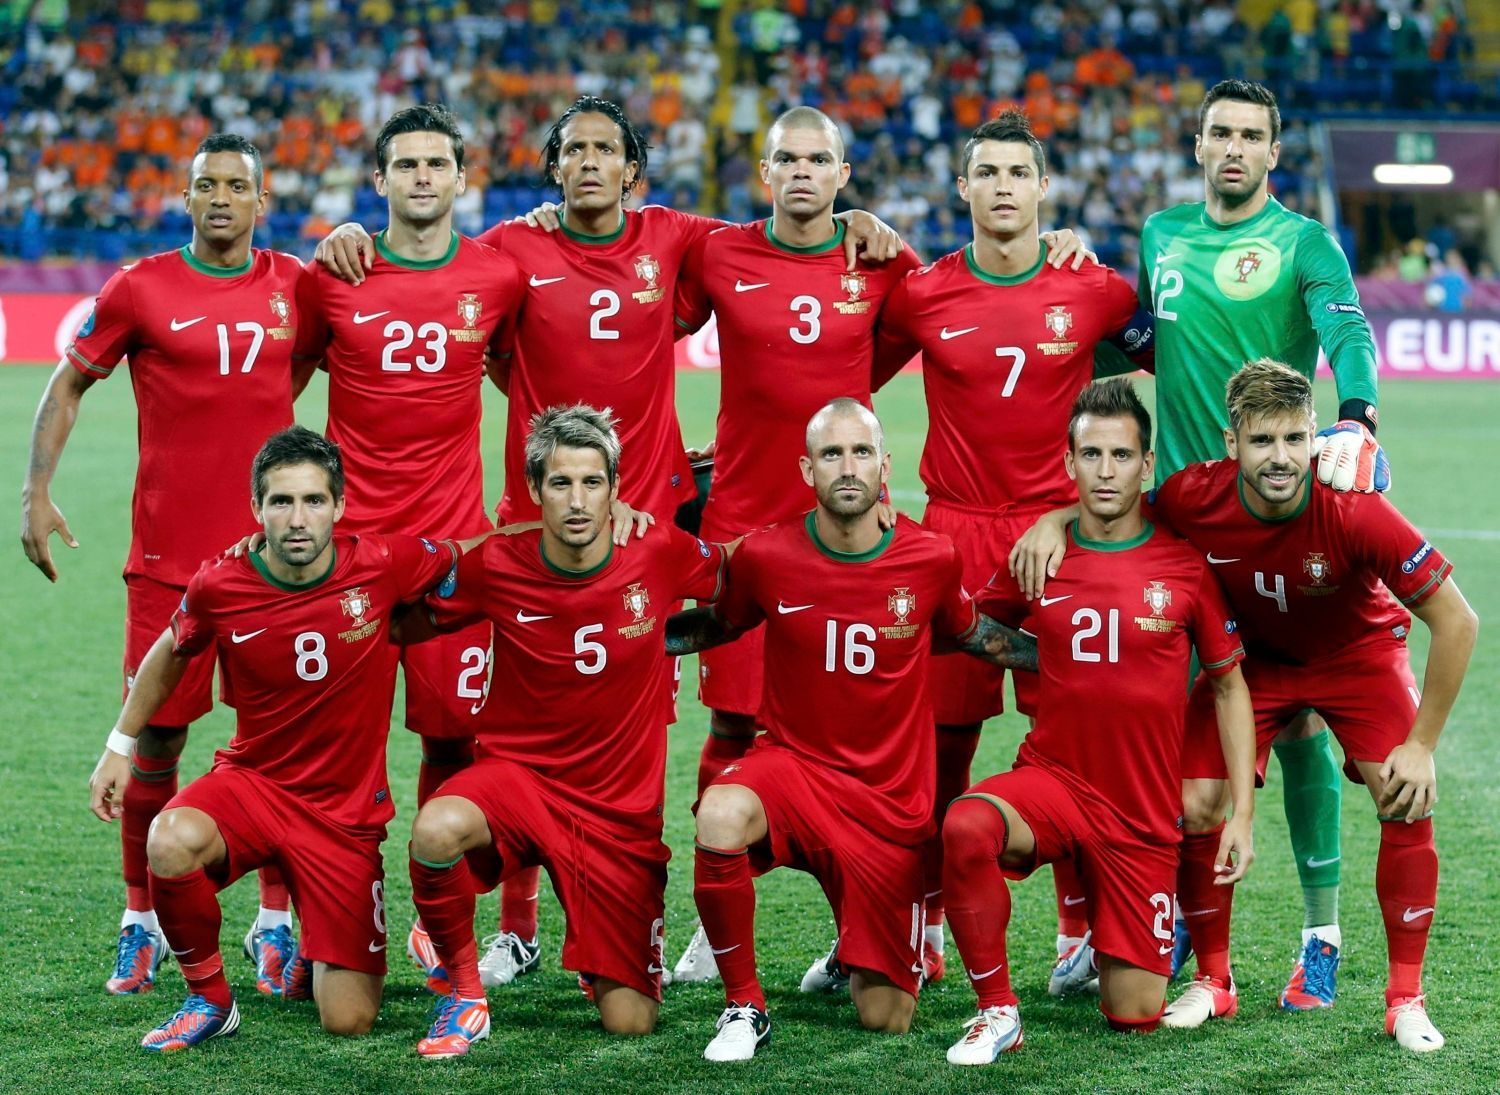 Portugalská fotbalová reprezentace před utkáním skupiny B na Euru 2012